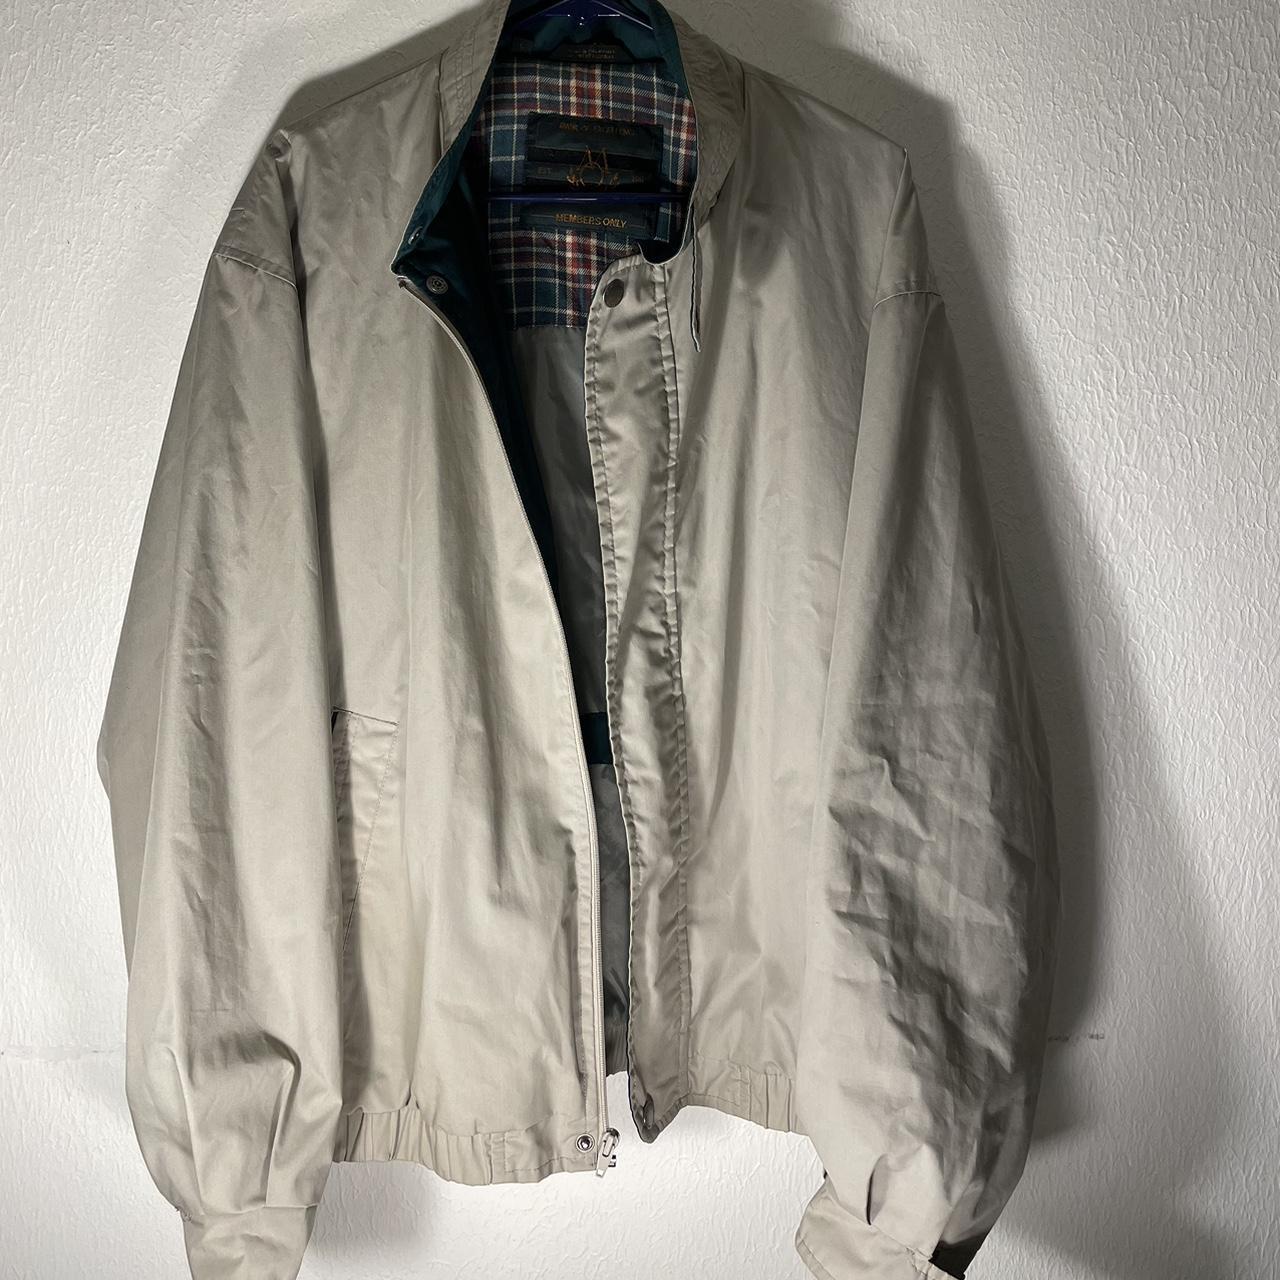 🧥• Vintage Members Only Jacket 📏• L ⏰• 1990s... - Depop